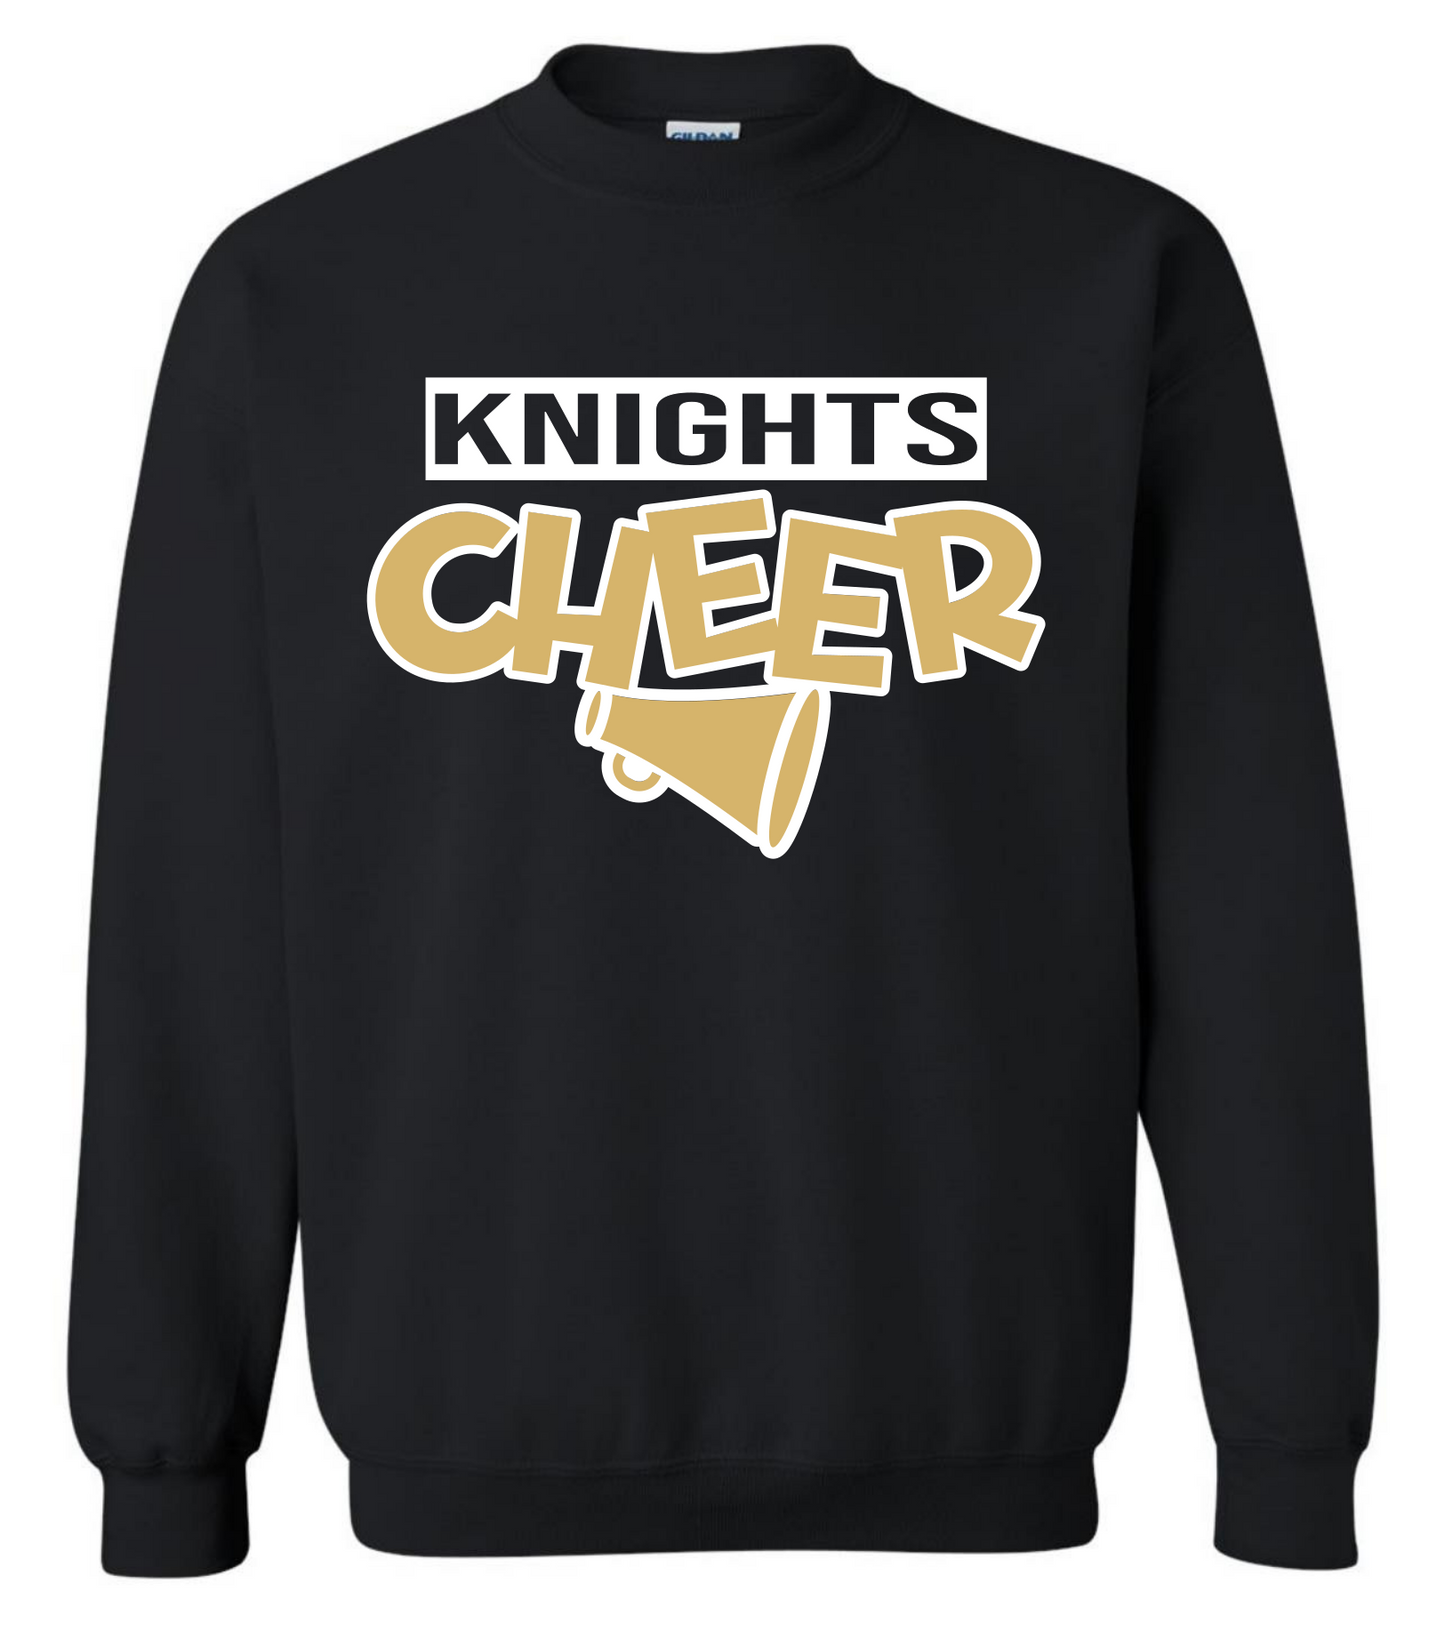 Knights Cheer Sweatshirt